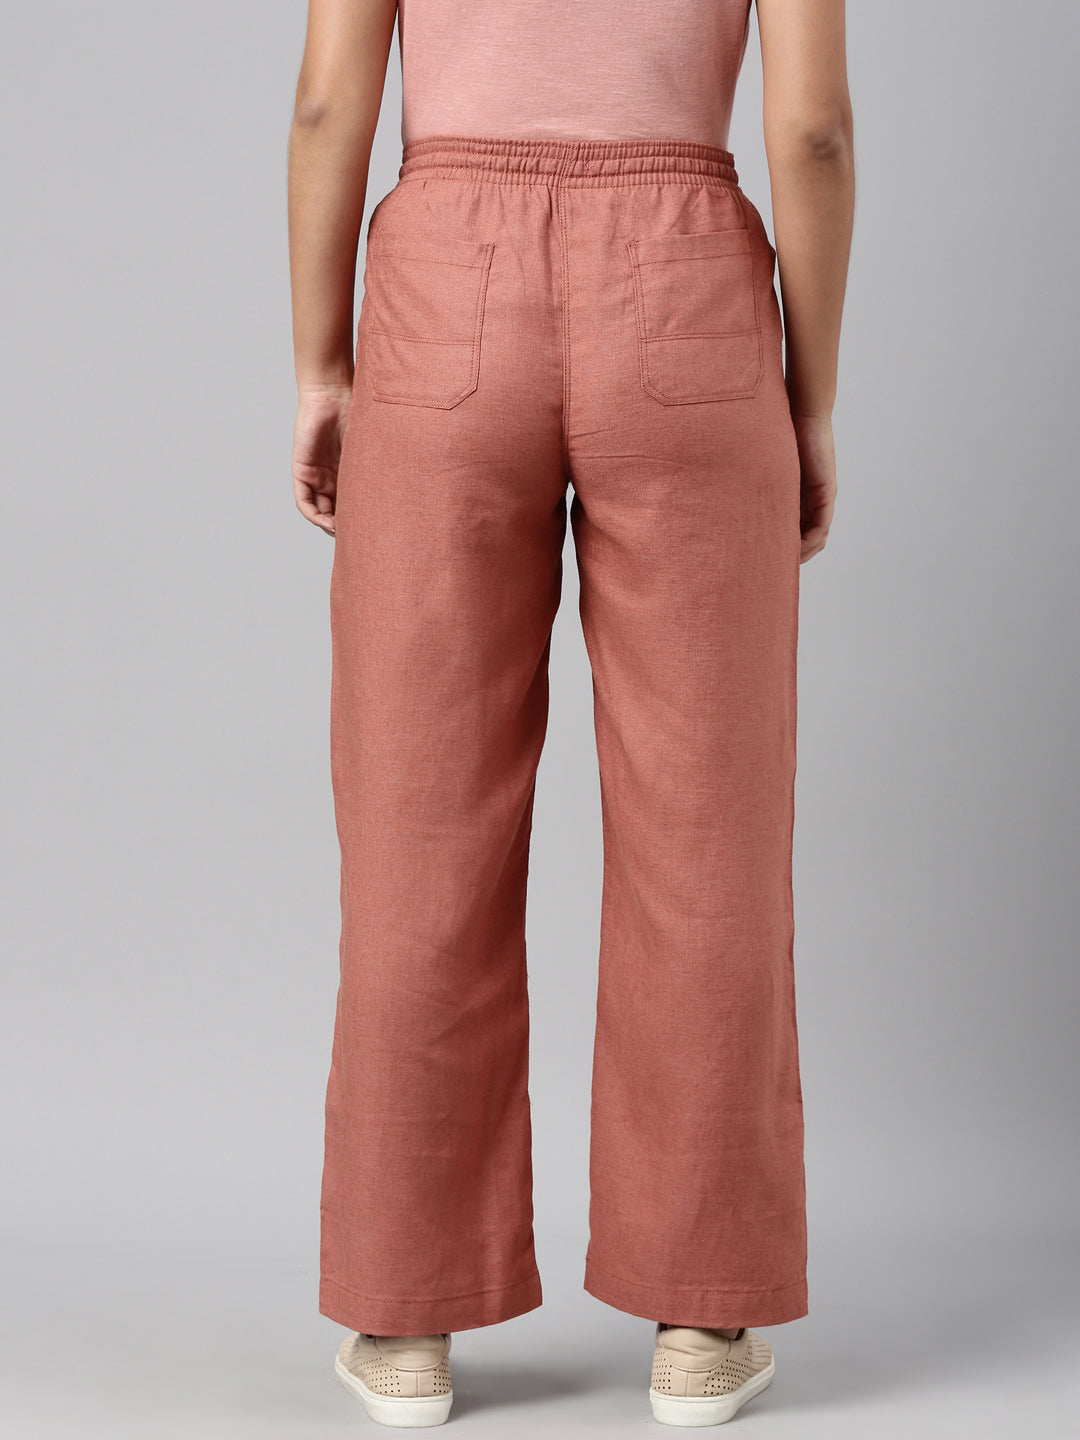 Solid Color Cotton Linen Trouser in Light Purple  MST155